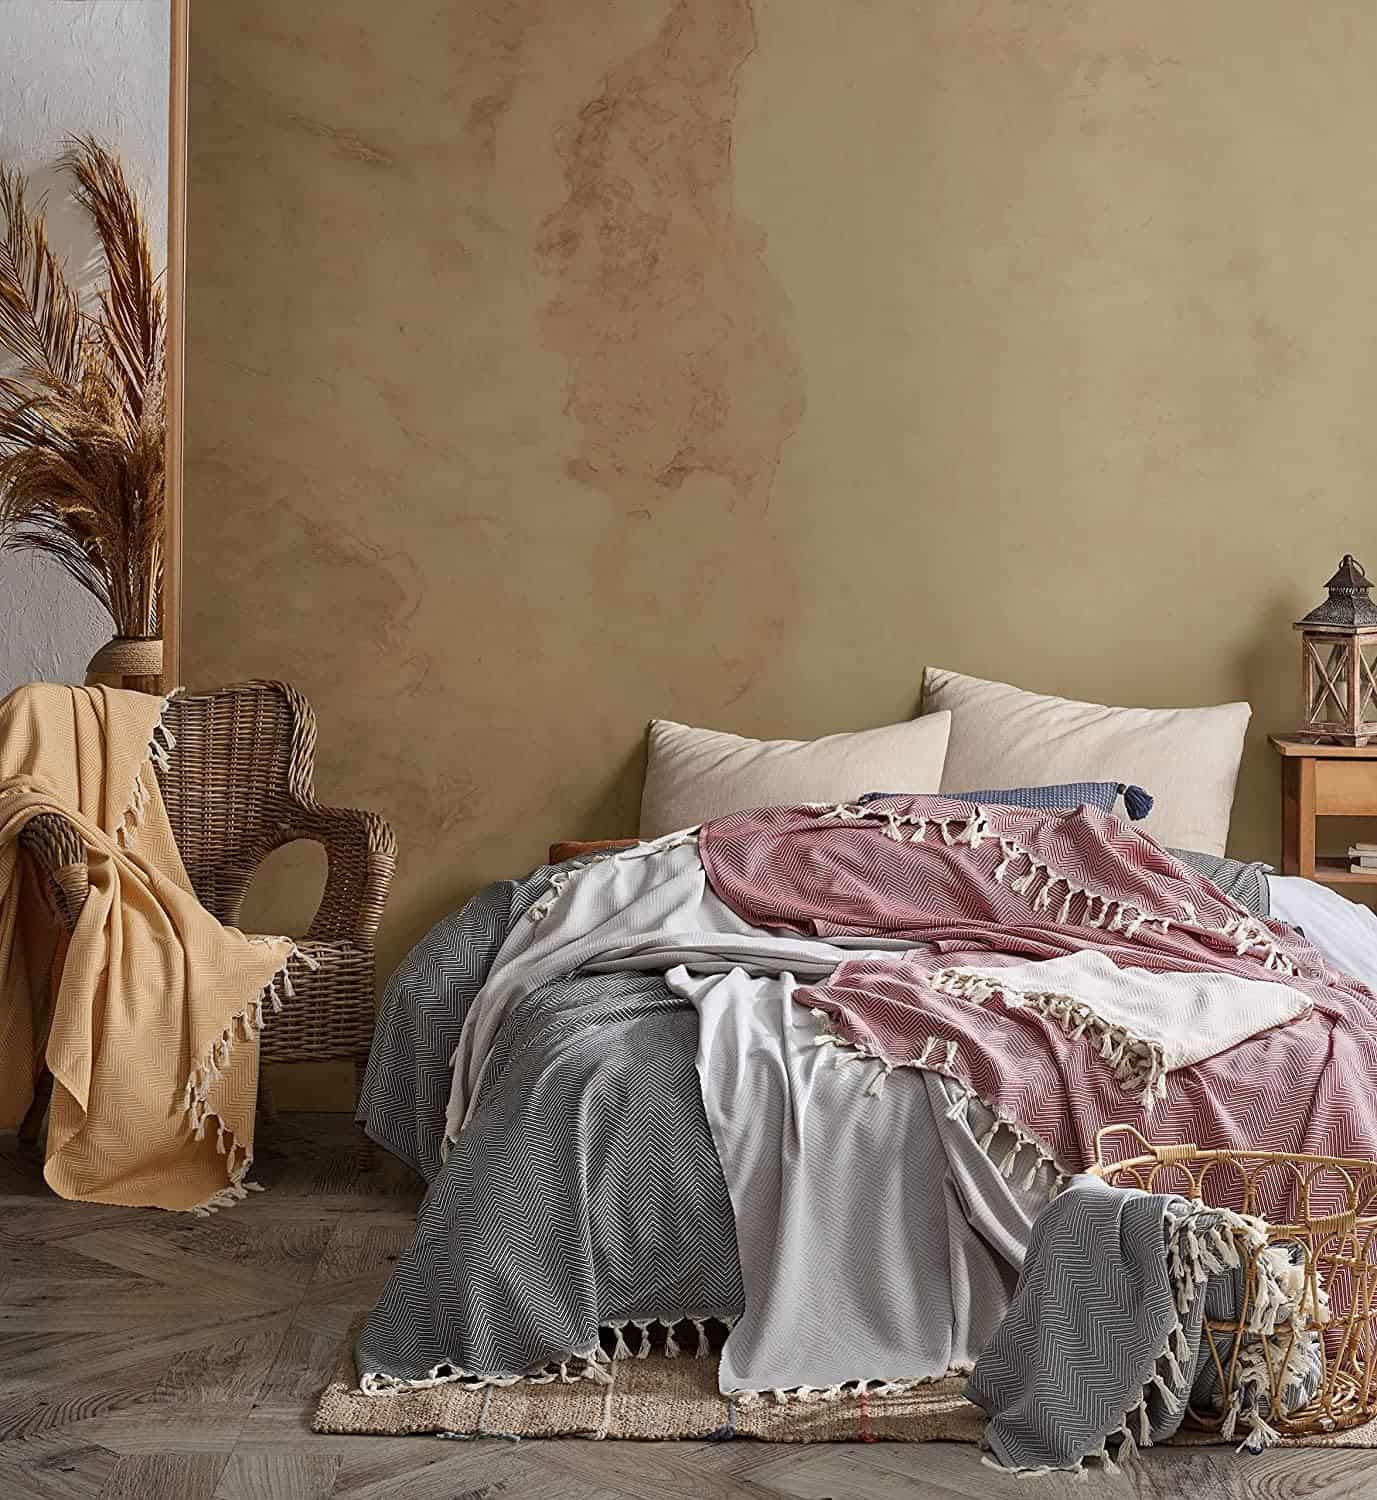 Bohoria Tagesdecke Tulum Premium Tagesdecke 100% Baumwolle 170 x 230 cm Bett-Überwurf, Couch-Überwurf, Sofa-Decke mit Fischgrätenmuster